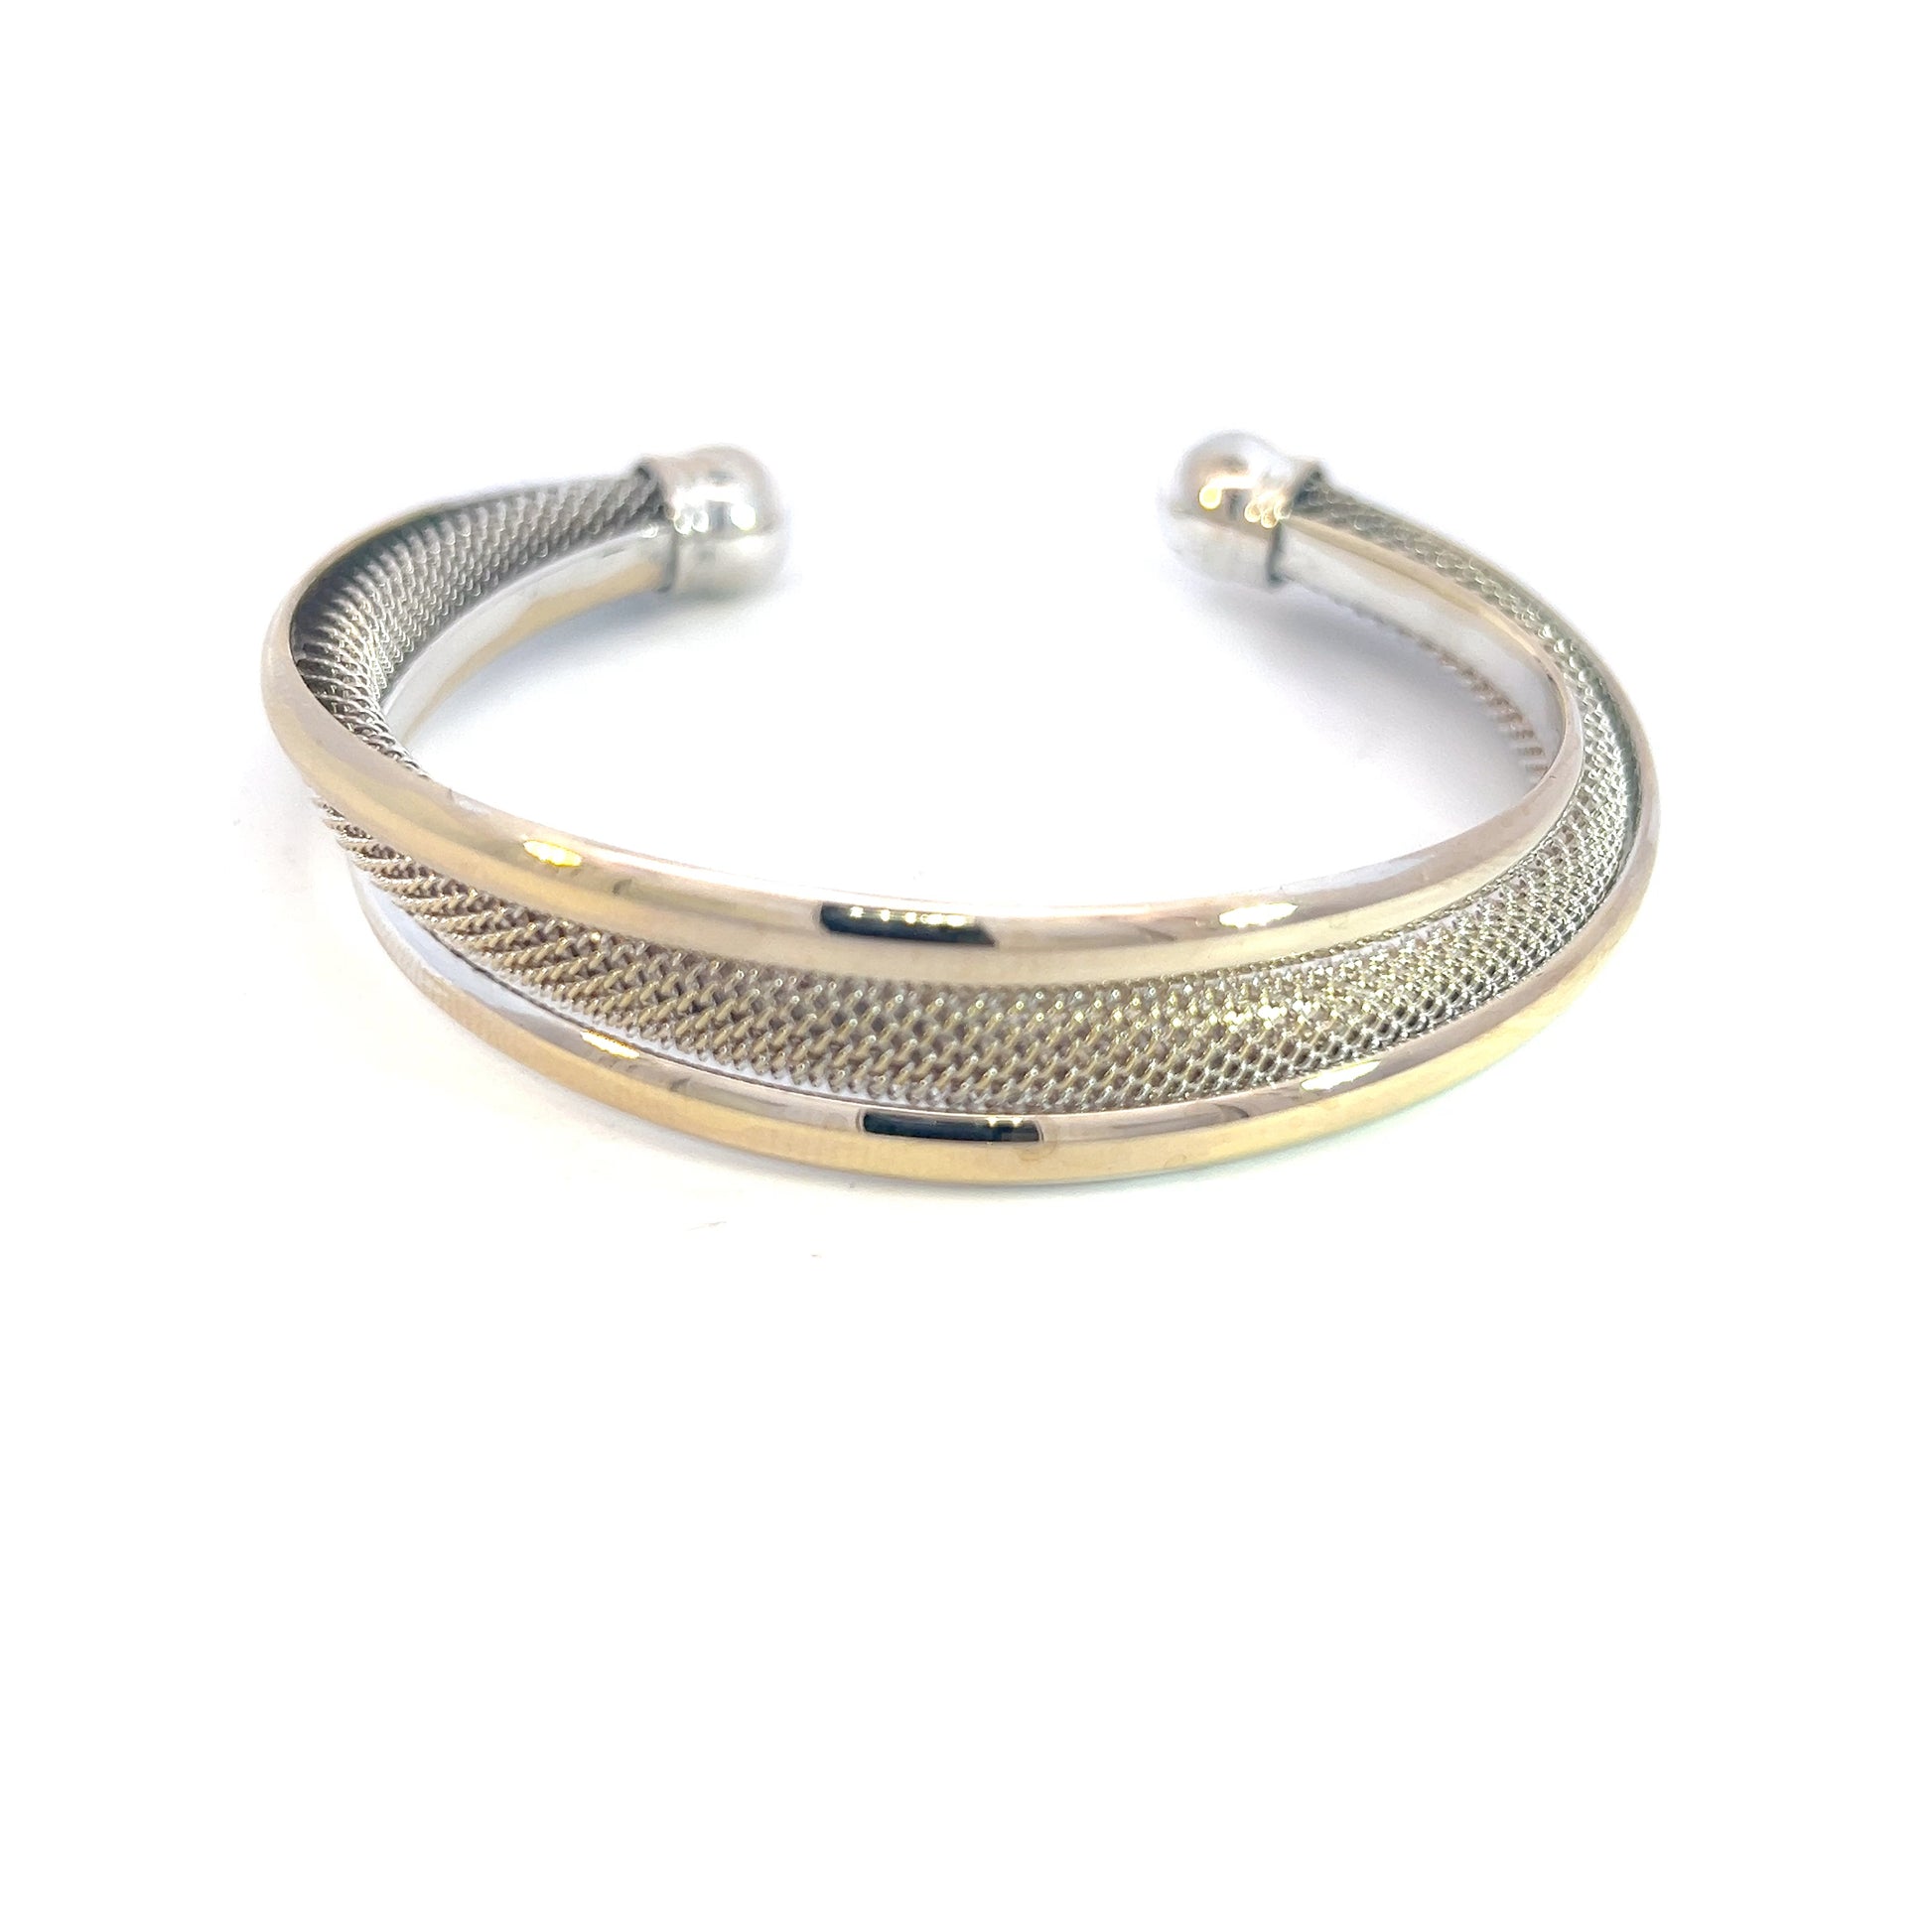 Tiffany & Co Estate Somerset Cuff Bracelet 7" Sterling Silver TIF619 - Certified Fine Jewelry